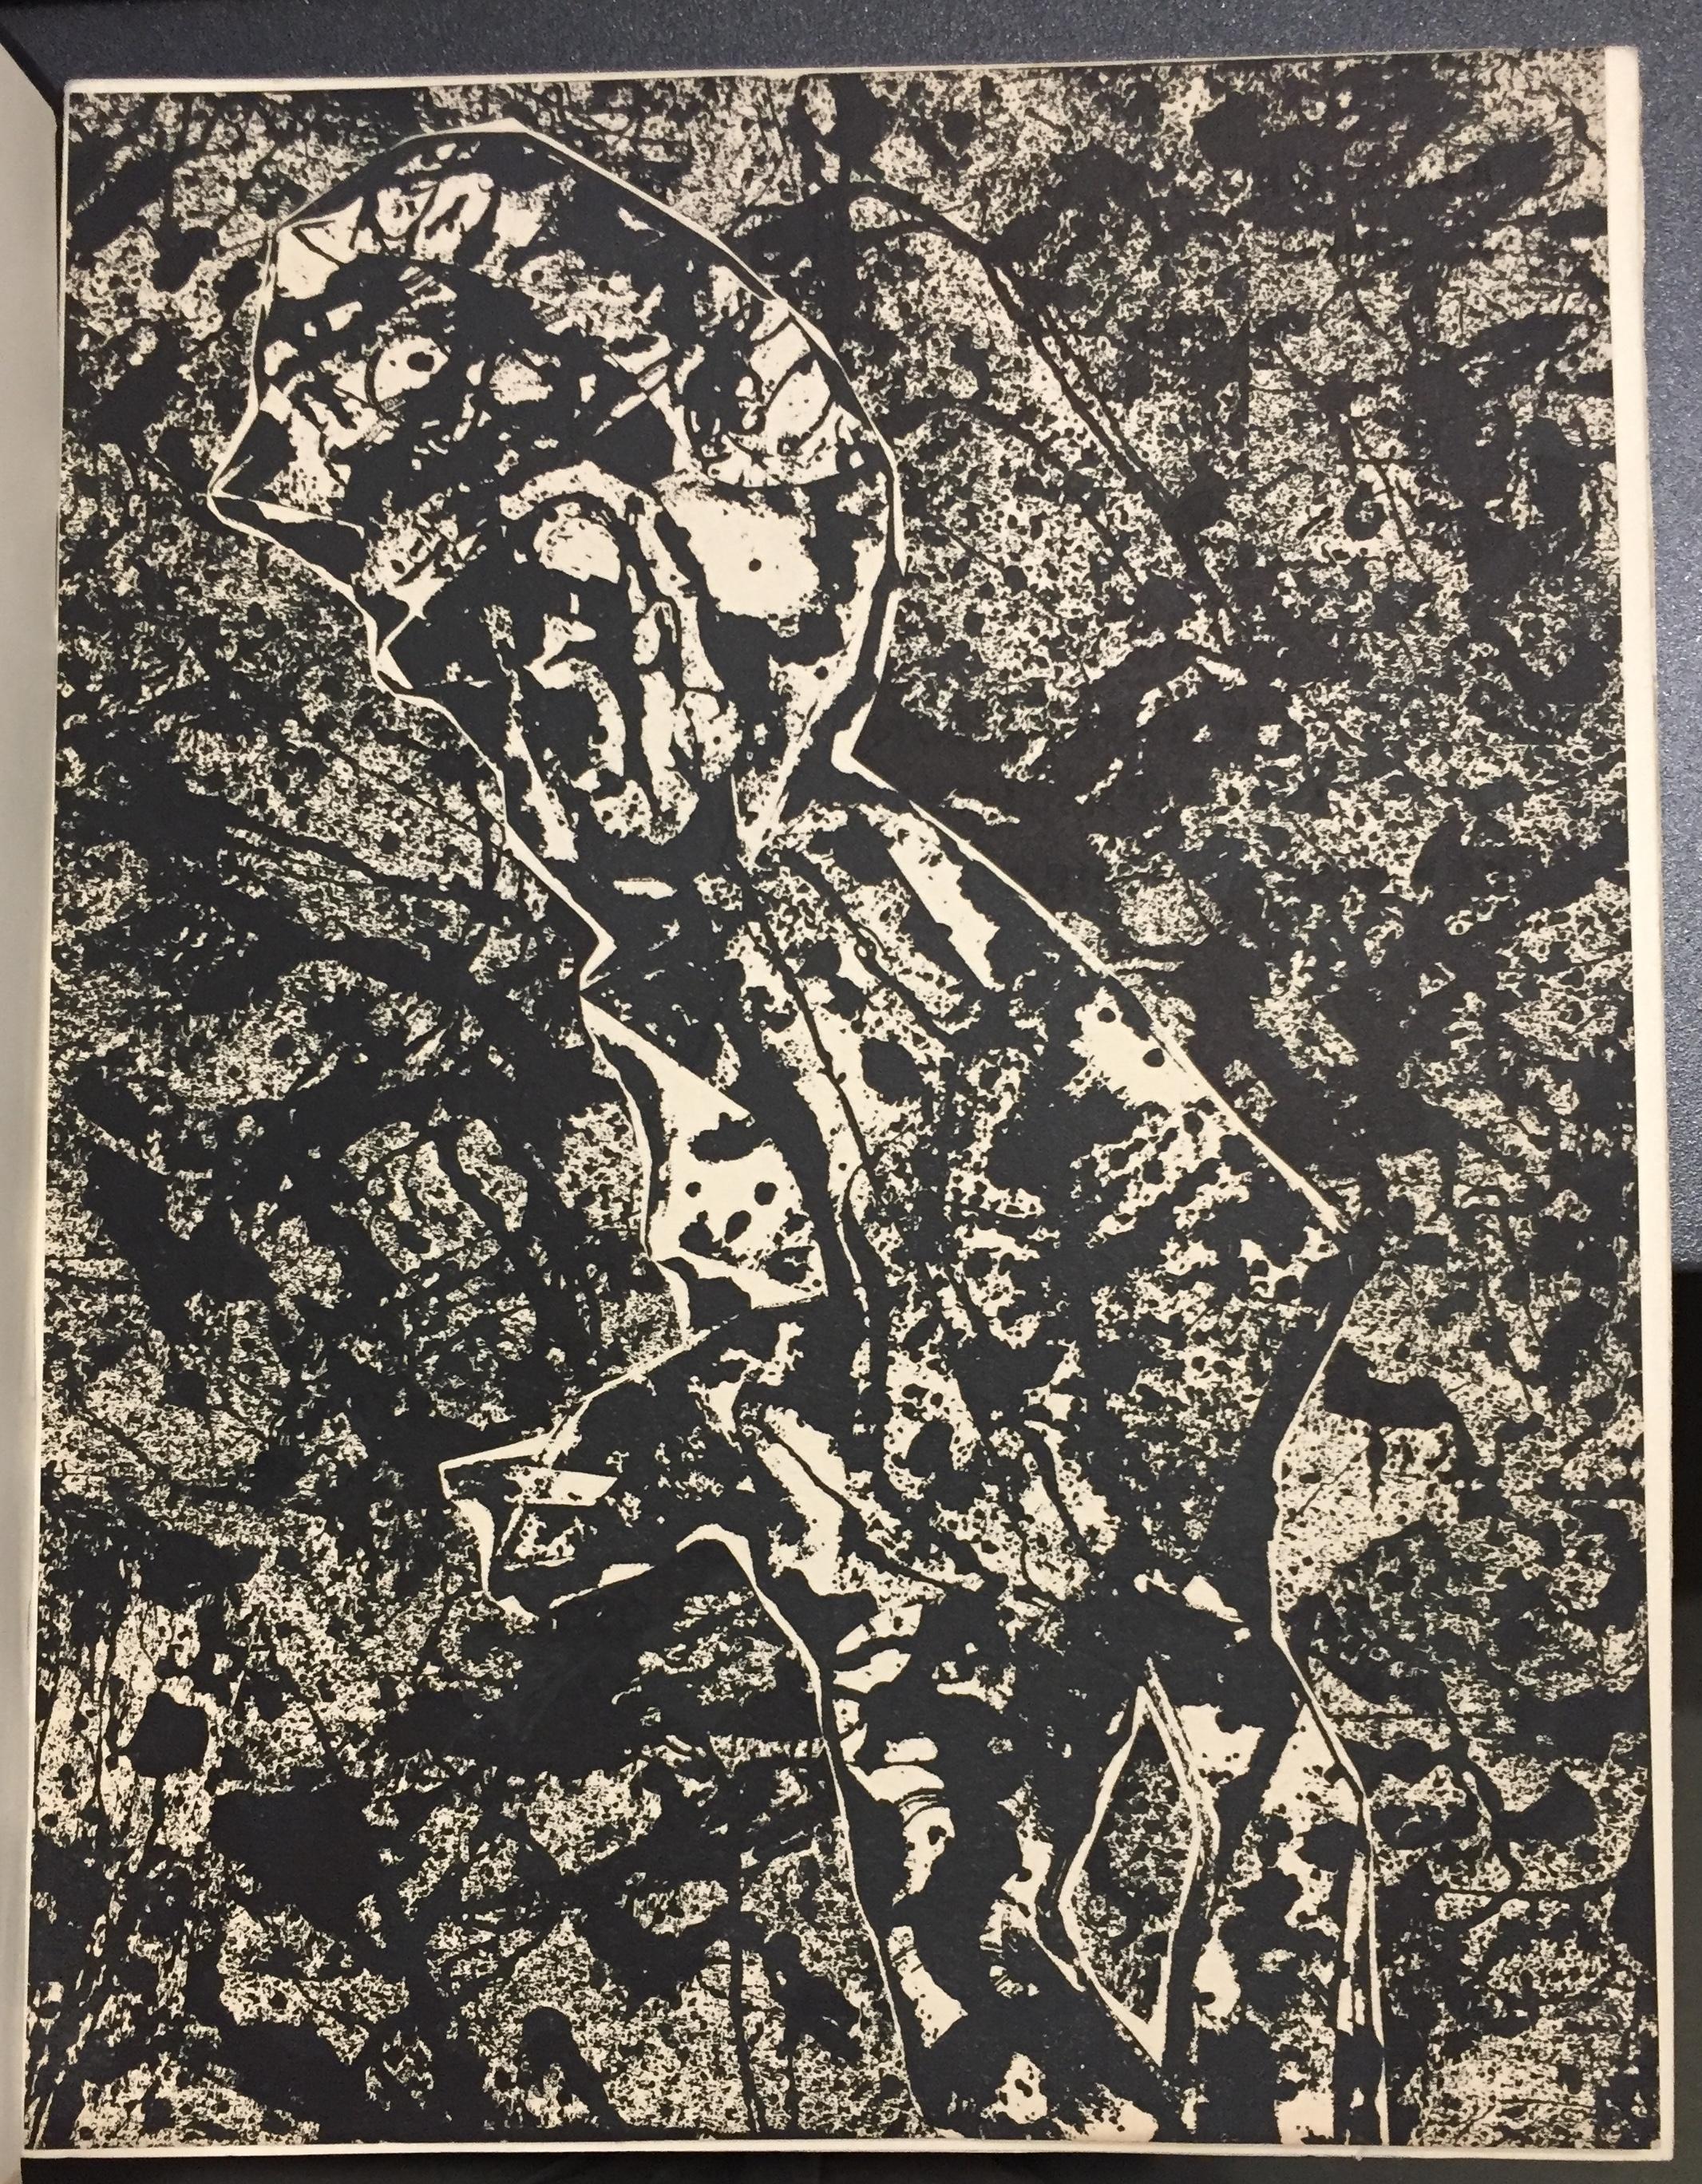 Exposition de peintures, dessins et expositions de travaux divers de 1942 1954 - Abstrait Art par Jean Dubuffet